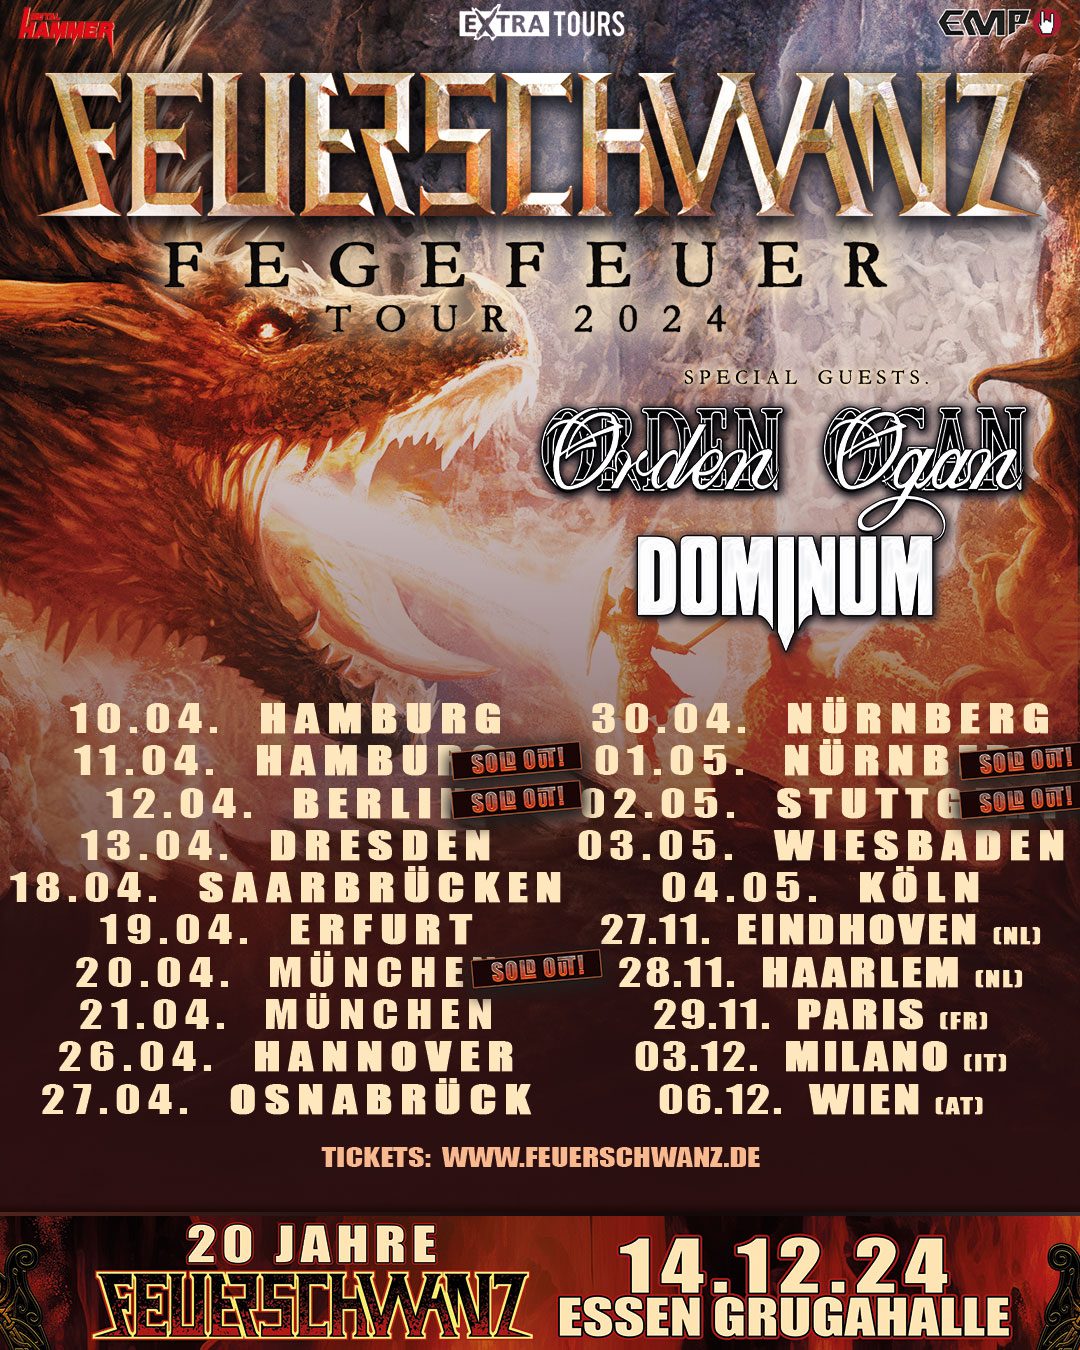 Cartel Feuerschwanz-fegefeuer-tour-2024